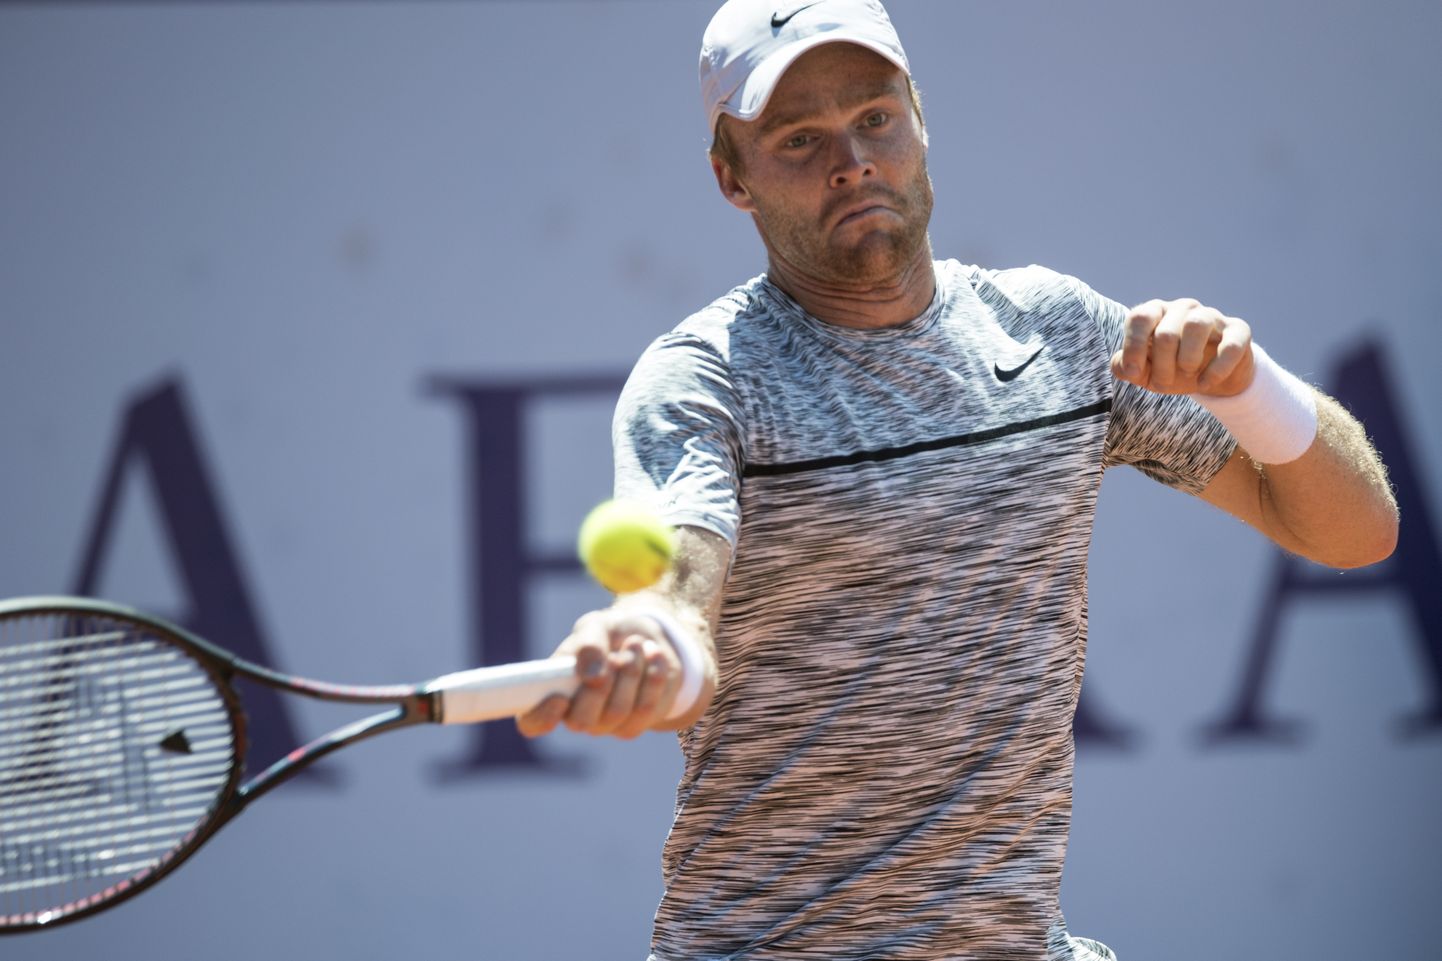 Eesti esireket Jürgen Zopp tõi Davis Cupi turniiril Eestile kindla võidupunkti.